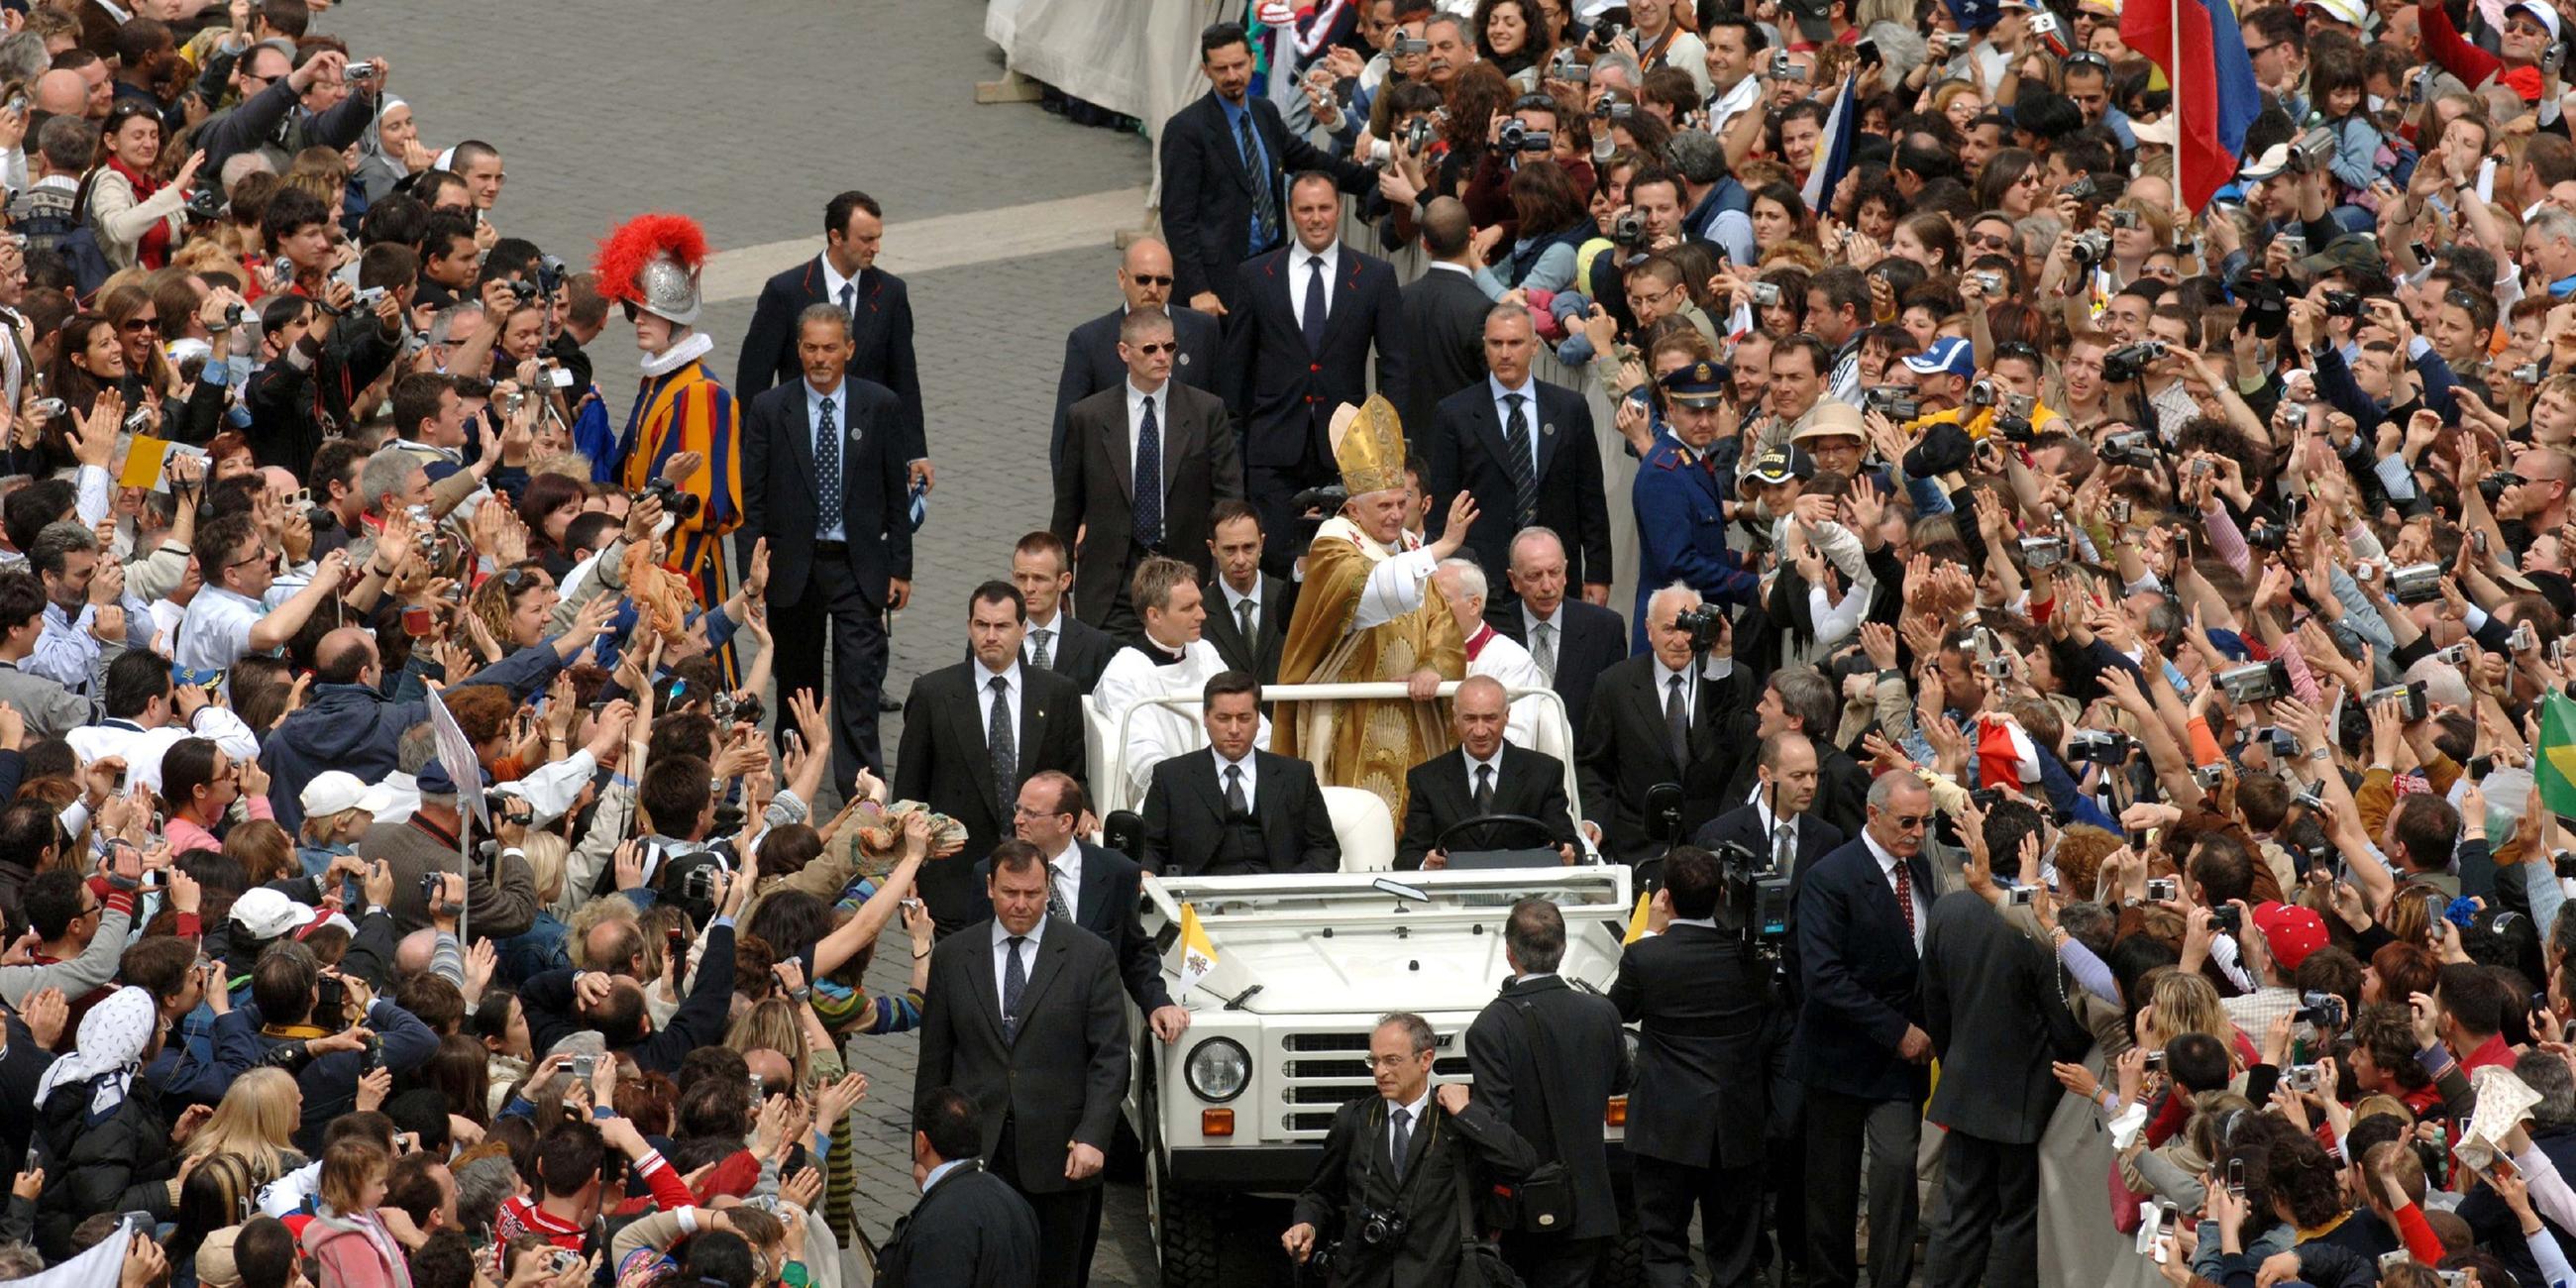 Papst Benedikt XVI. wird am Sonntag (24.04.2005) auf dem Papamobil durch die Menge über den Petersplatz am Vatikan gefahren.